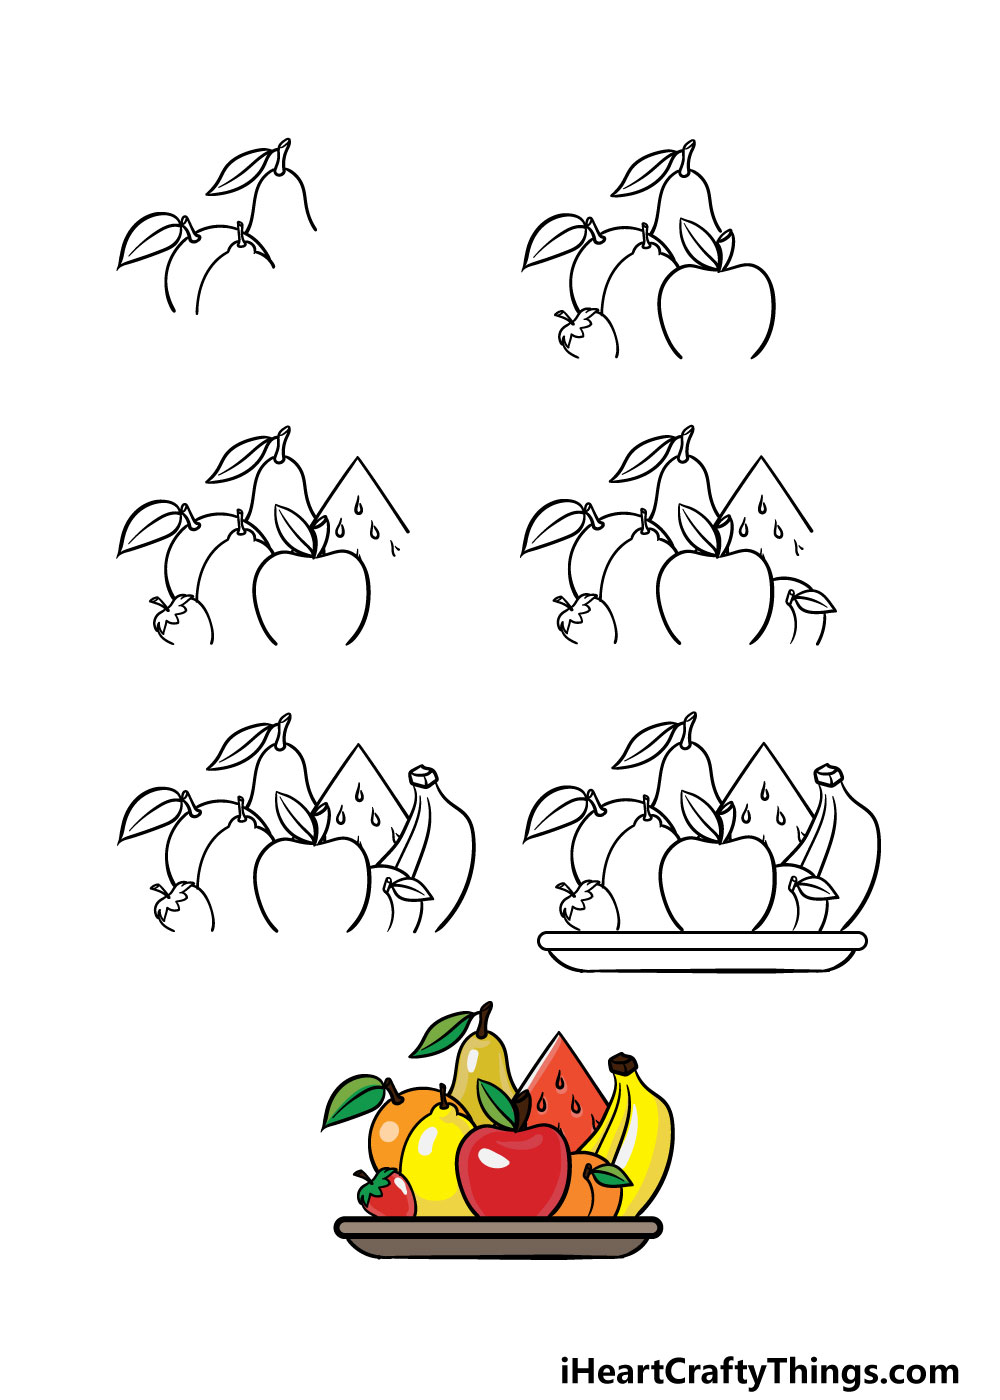 Fruits - Hướng dẫn cách vẽ trái cây hoa quả đơn giản với 7 bước cơ bản